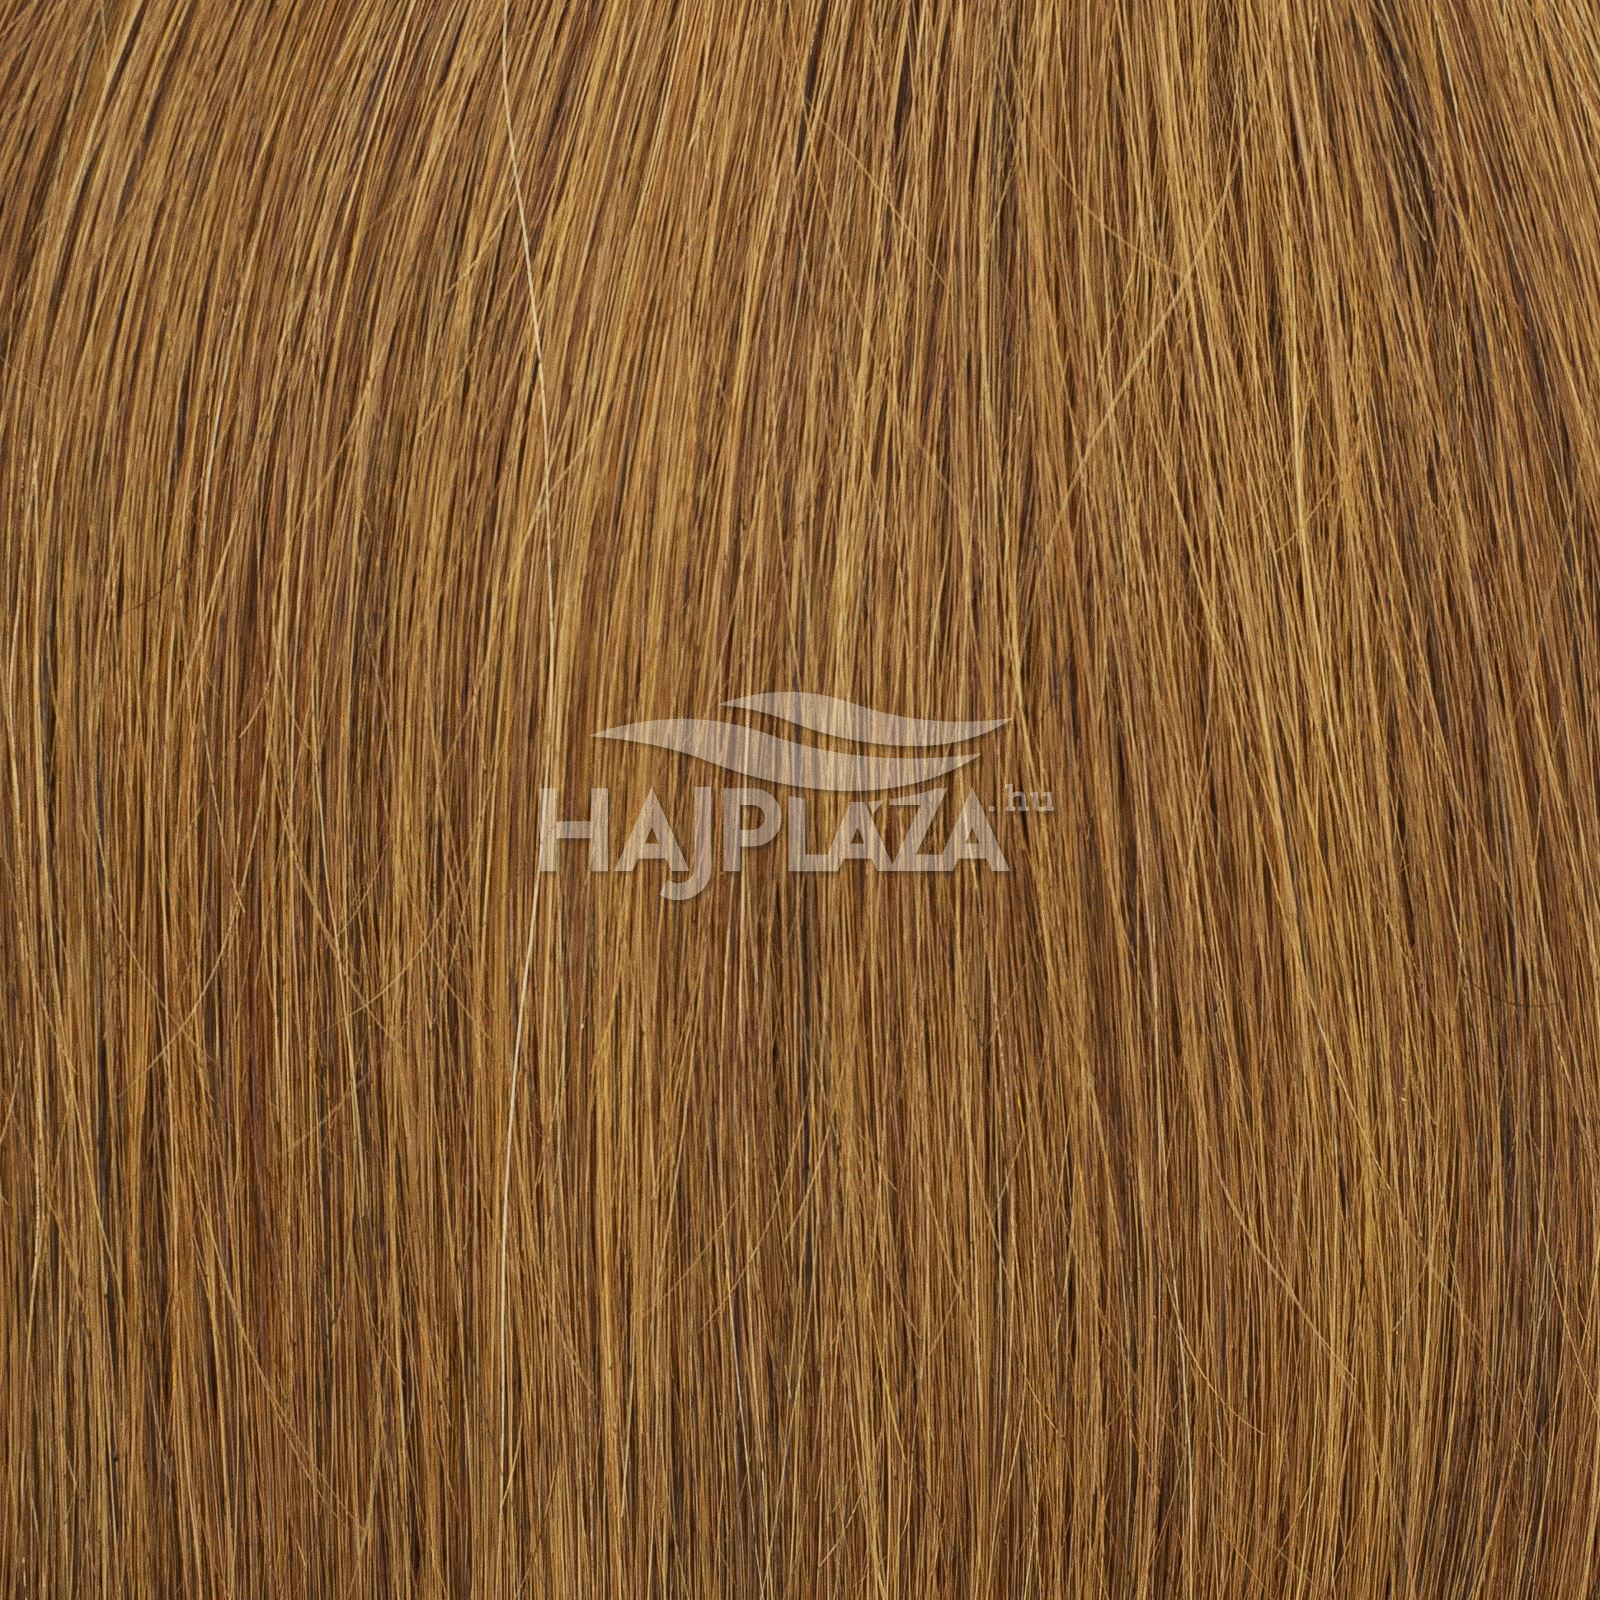 Festett középbarna keratinos haj - 50-55 cm